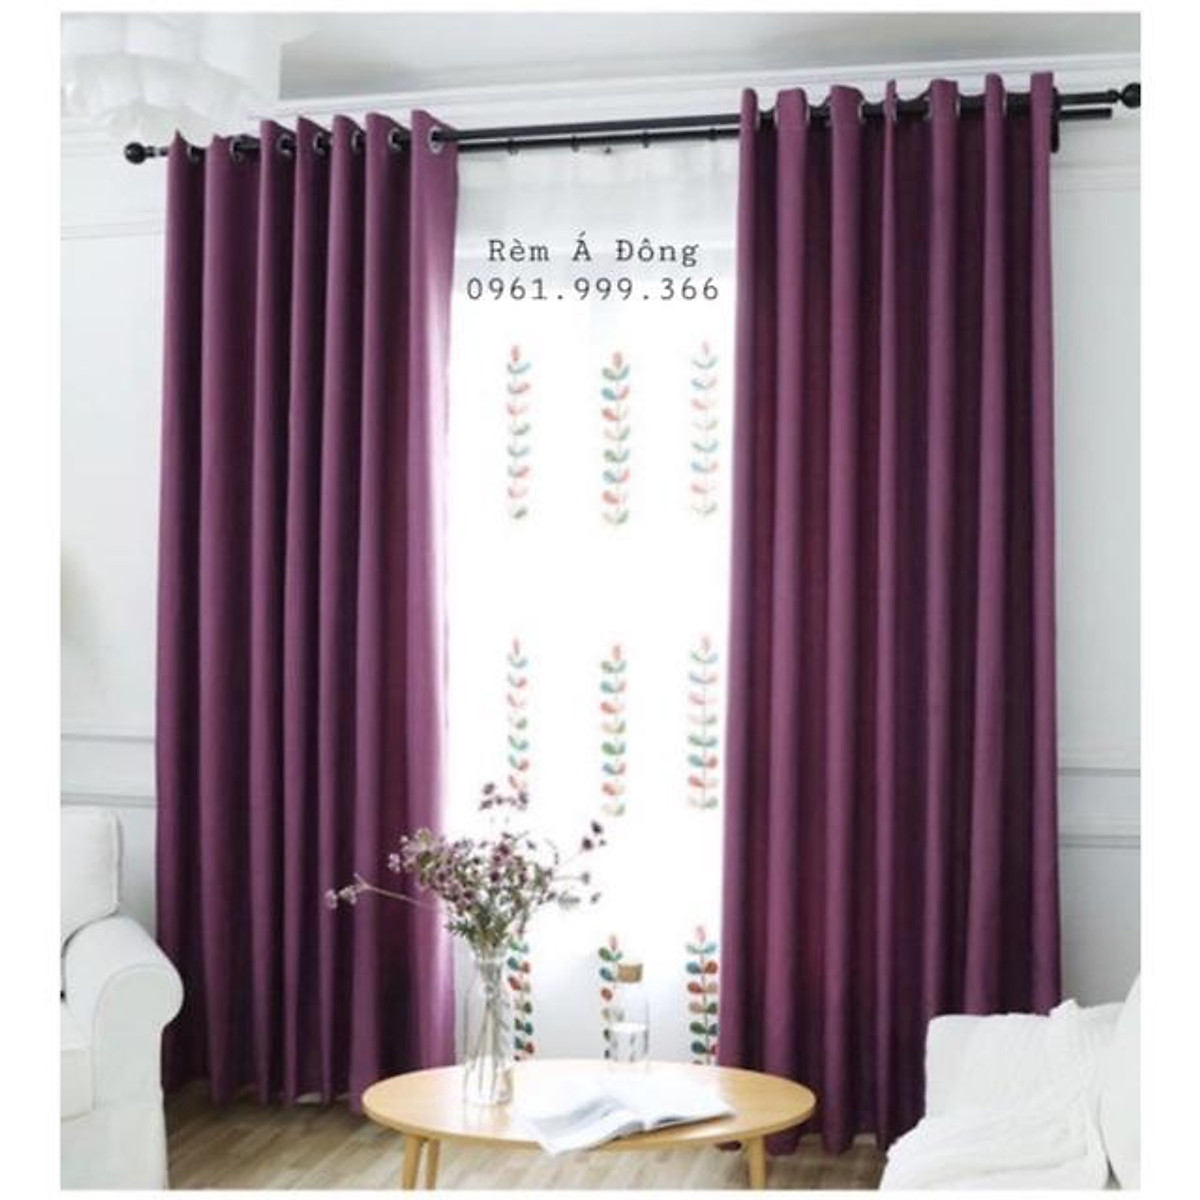 Rèm vải thô màu tím lavender, rèm trang trí nhà cửa - Cao cố định 2.7m